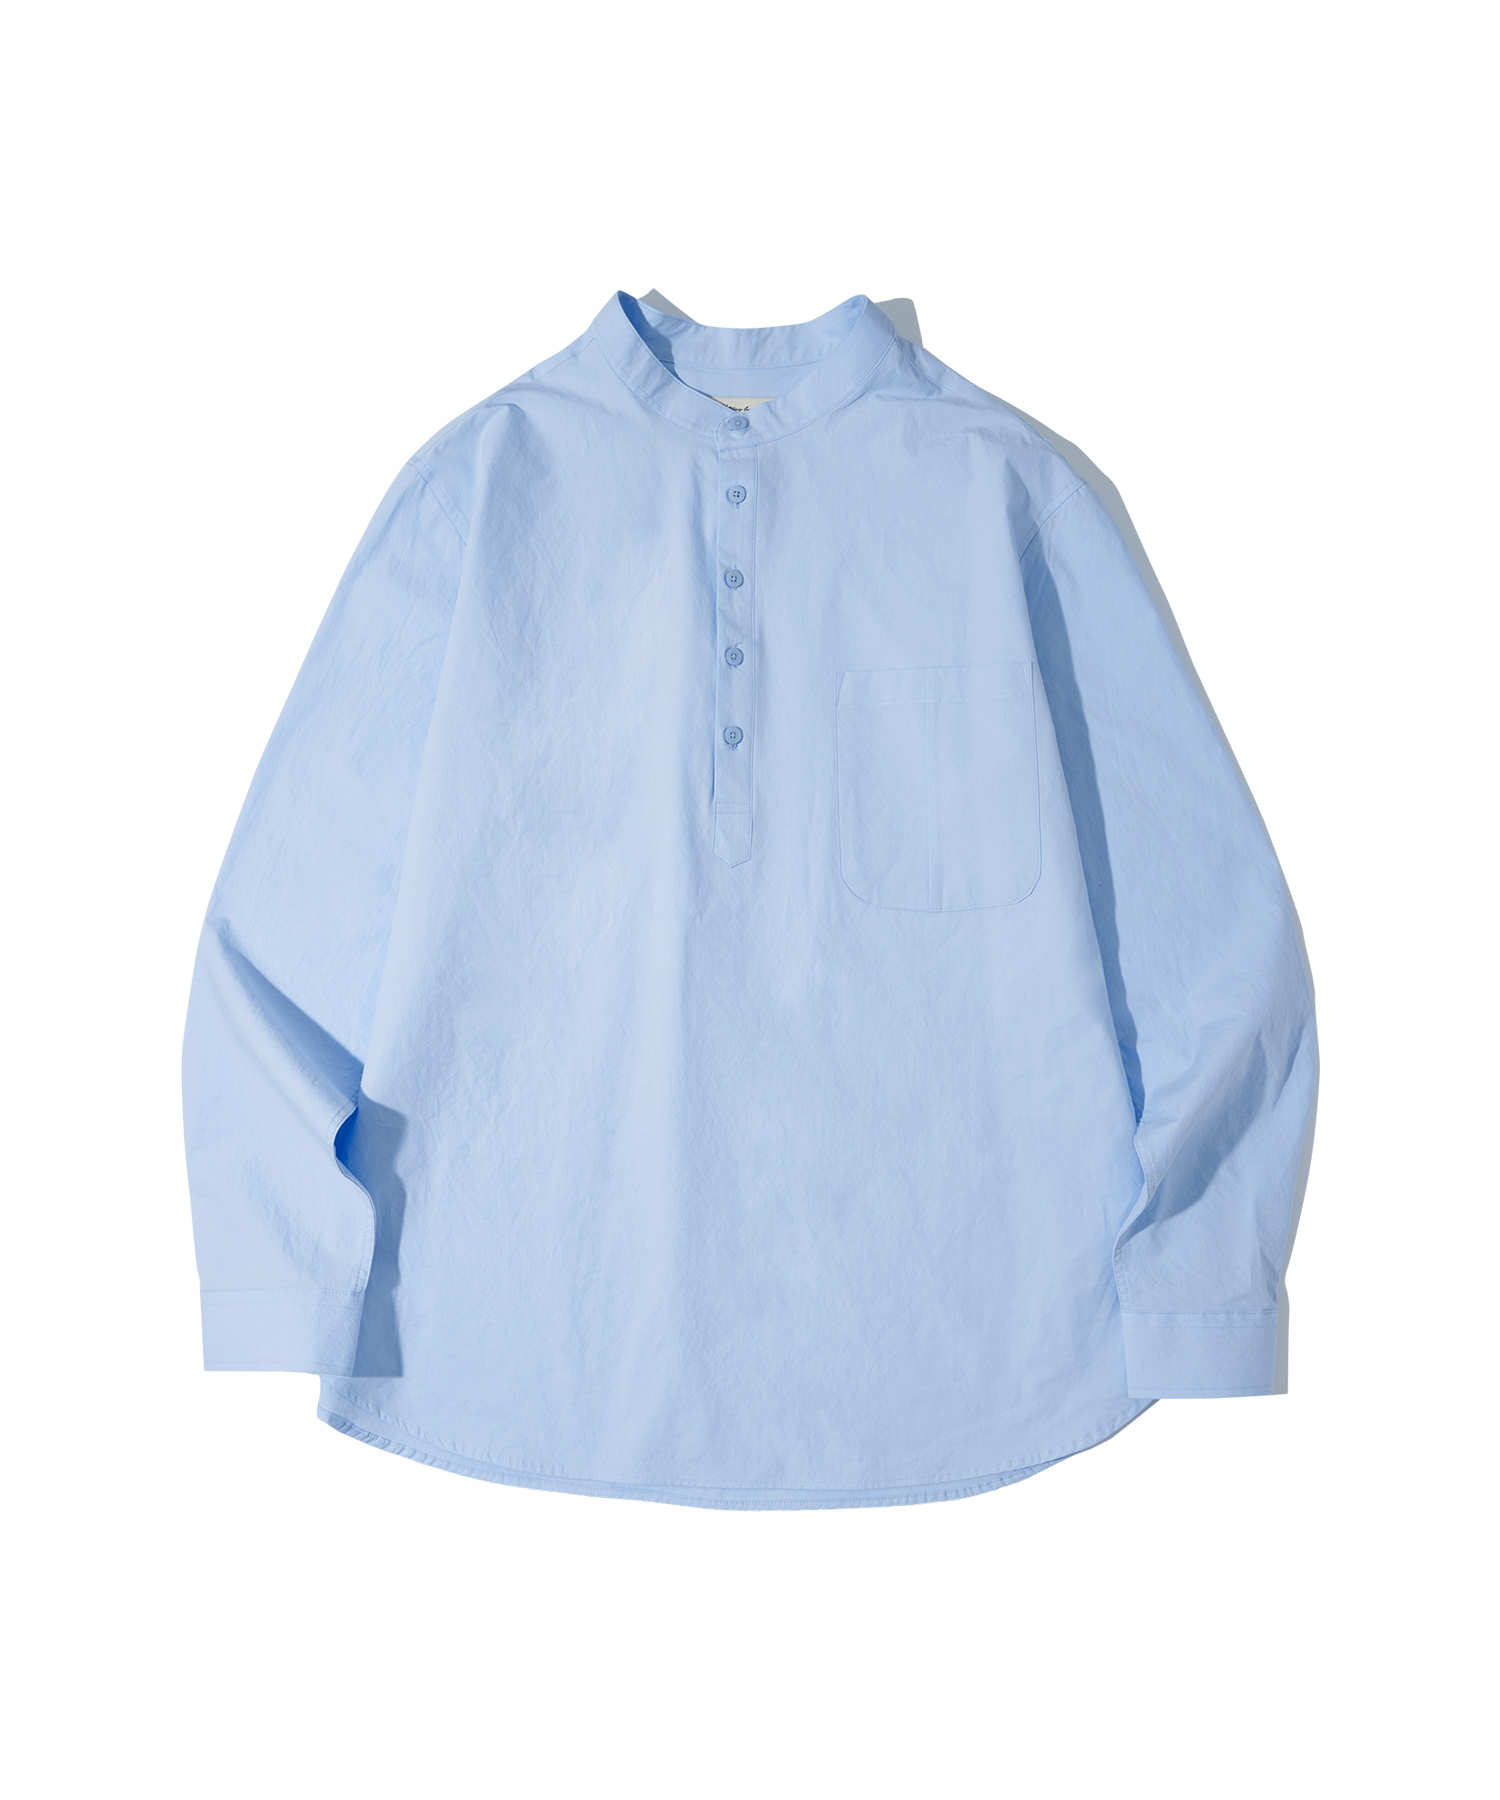 T20003 Henry neck shirt_Sky blue